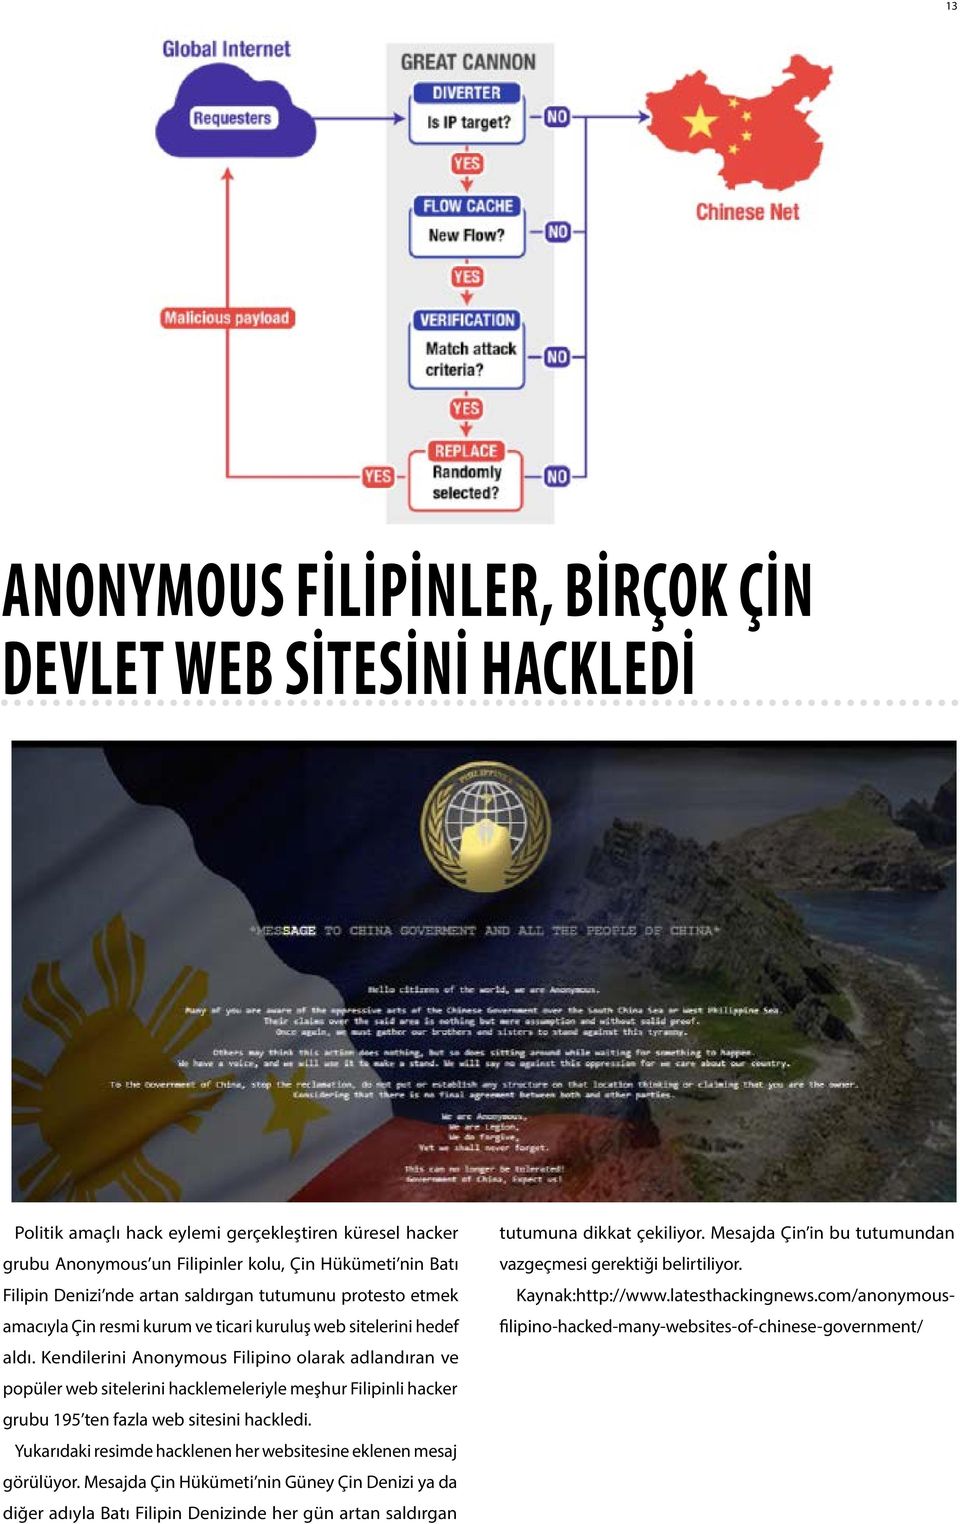 Kendilerini Anonymous Filipino olarak adlandıran ve popüler web sitelerini hacklemeleriyle meşhur Filipinli hacker grubu 195 ten fazla web sitesini hackledi.